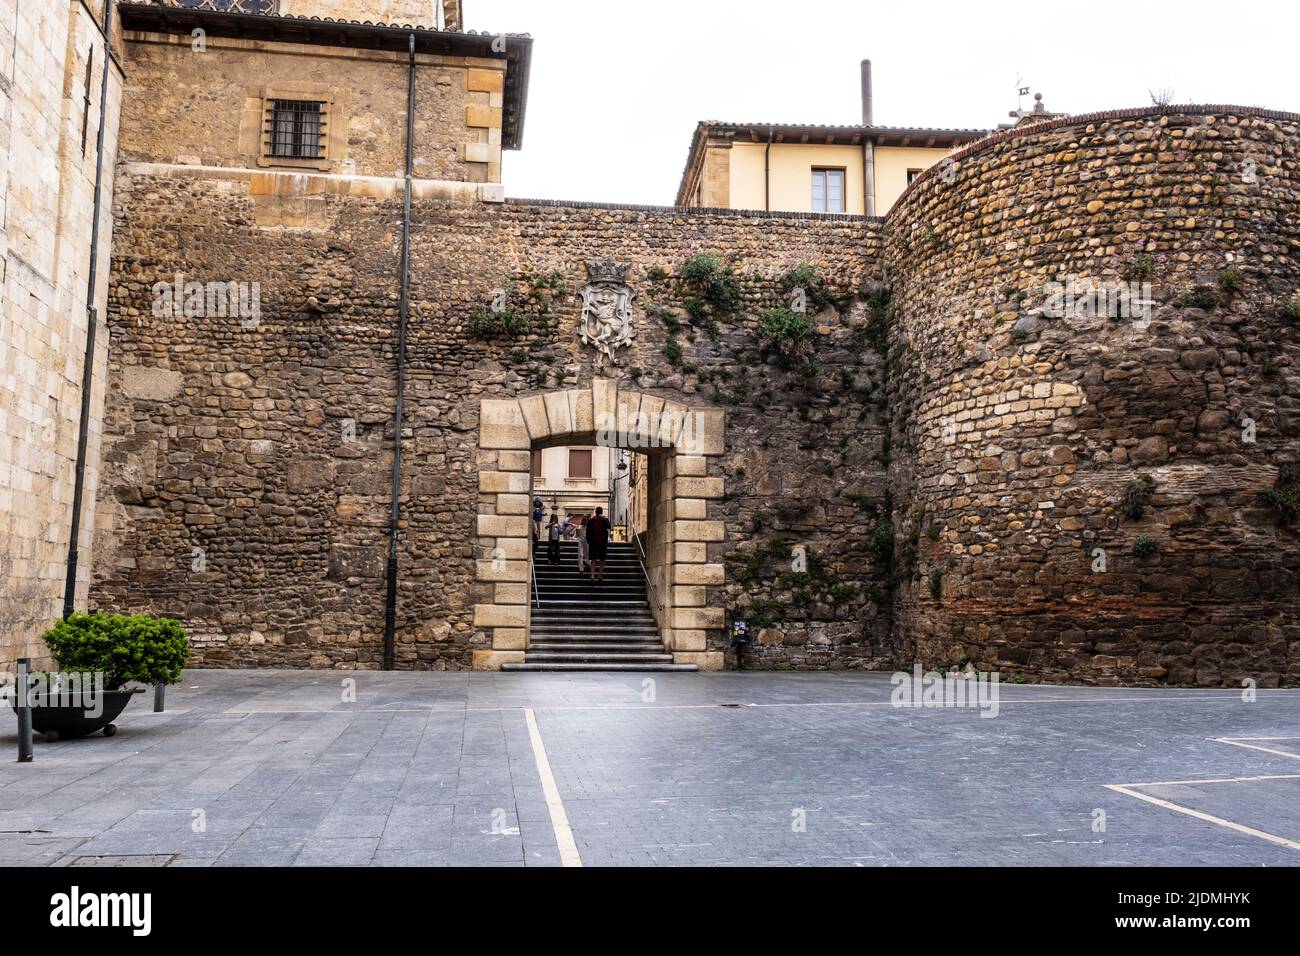 Spagna, Leon. Ingresso nella Città Vecchia attraverso i resti del Muro Romano incorporati nelle aggiunte medievali successive. Foto Stock